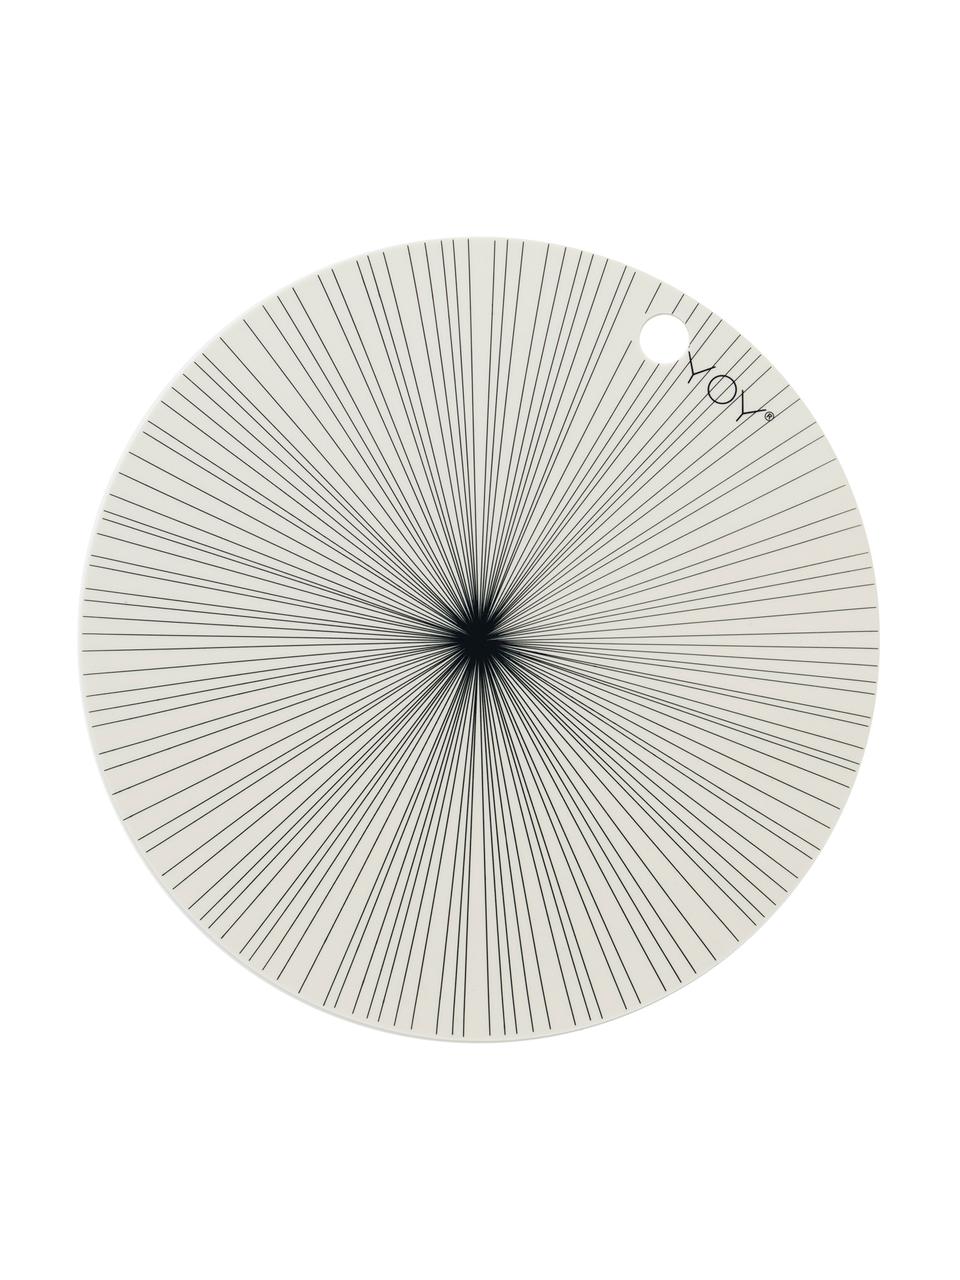 Runde Silikon Tischsets Ray, 2 Stück, Silikon, Gebrochenes Weiß, Schwarz, Ø 39 cm